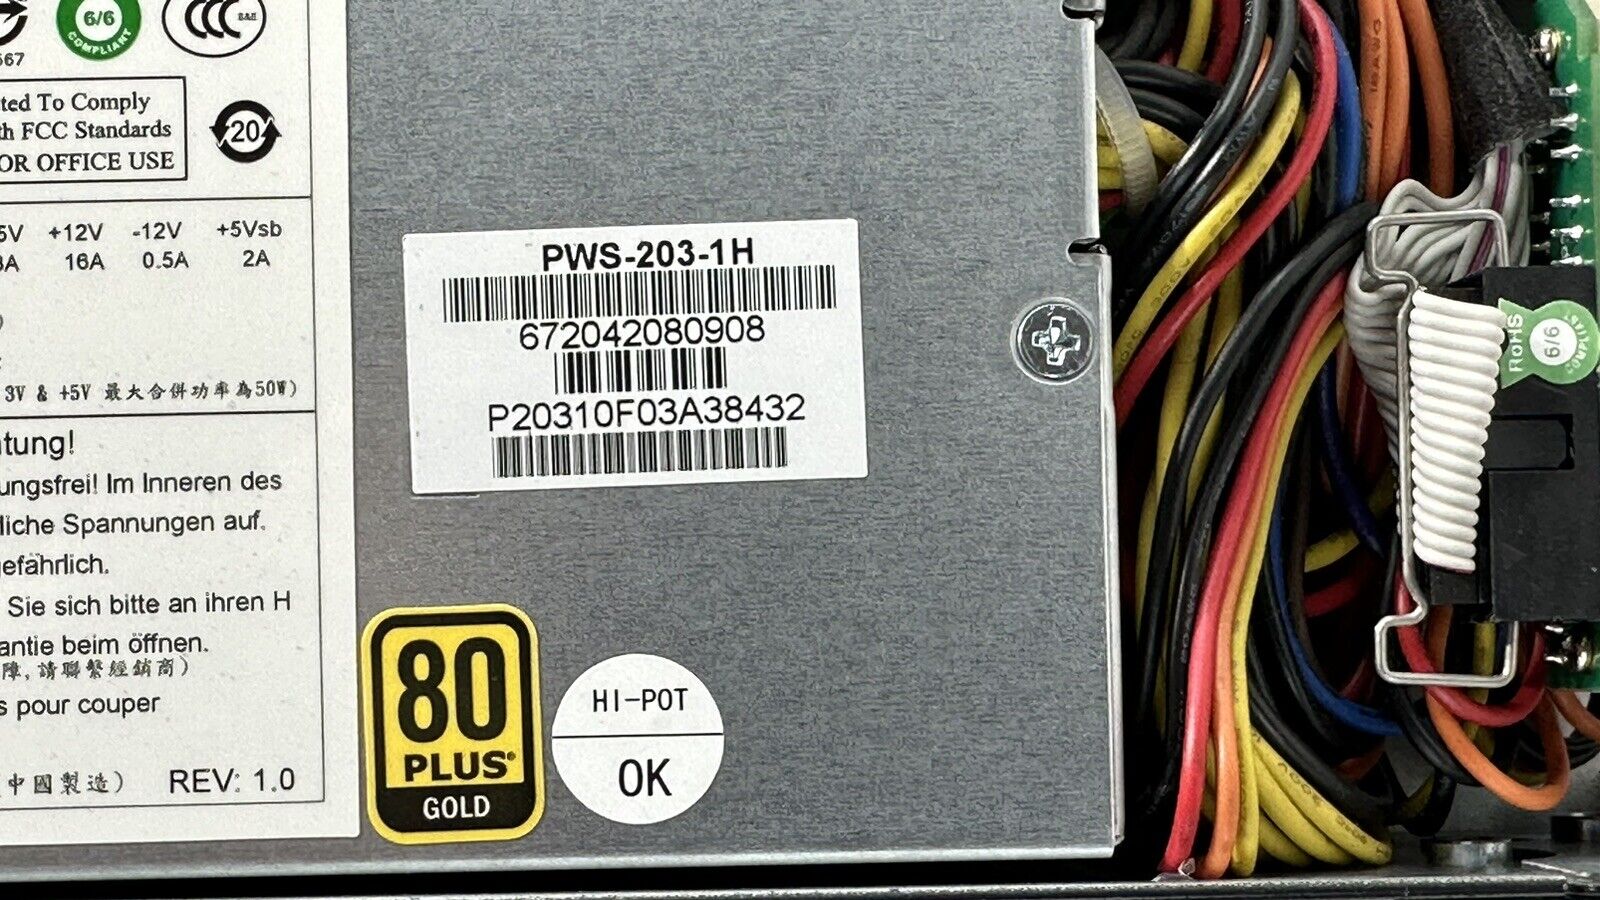 Supermicro 5018D-FN4T Xeon-D 1540 64GB DDR4 ECC RAM 4x 1TB SSD 1x 480GB M.2 SSD Server